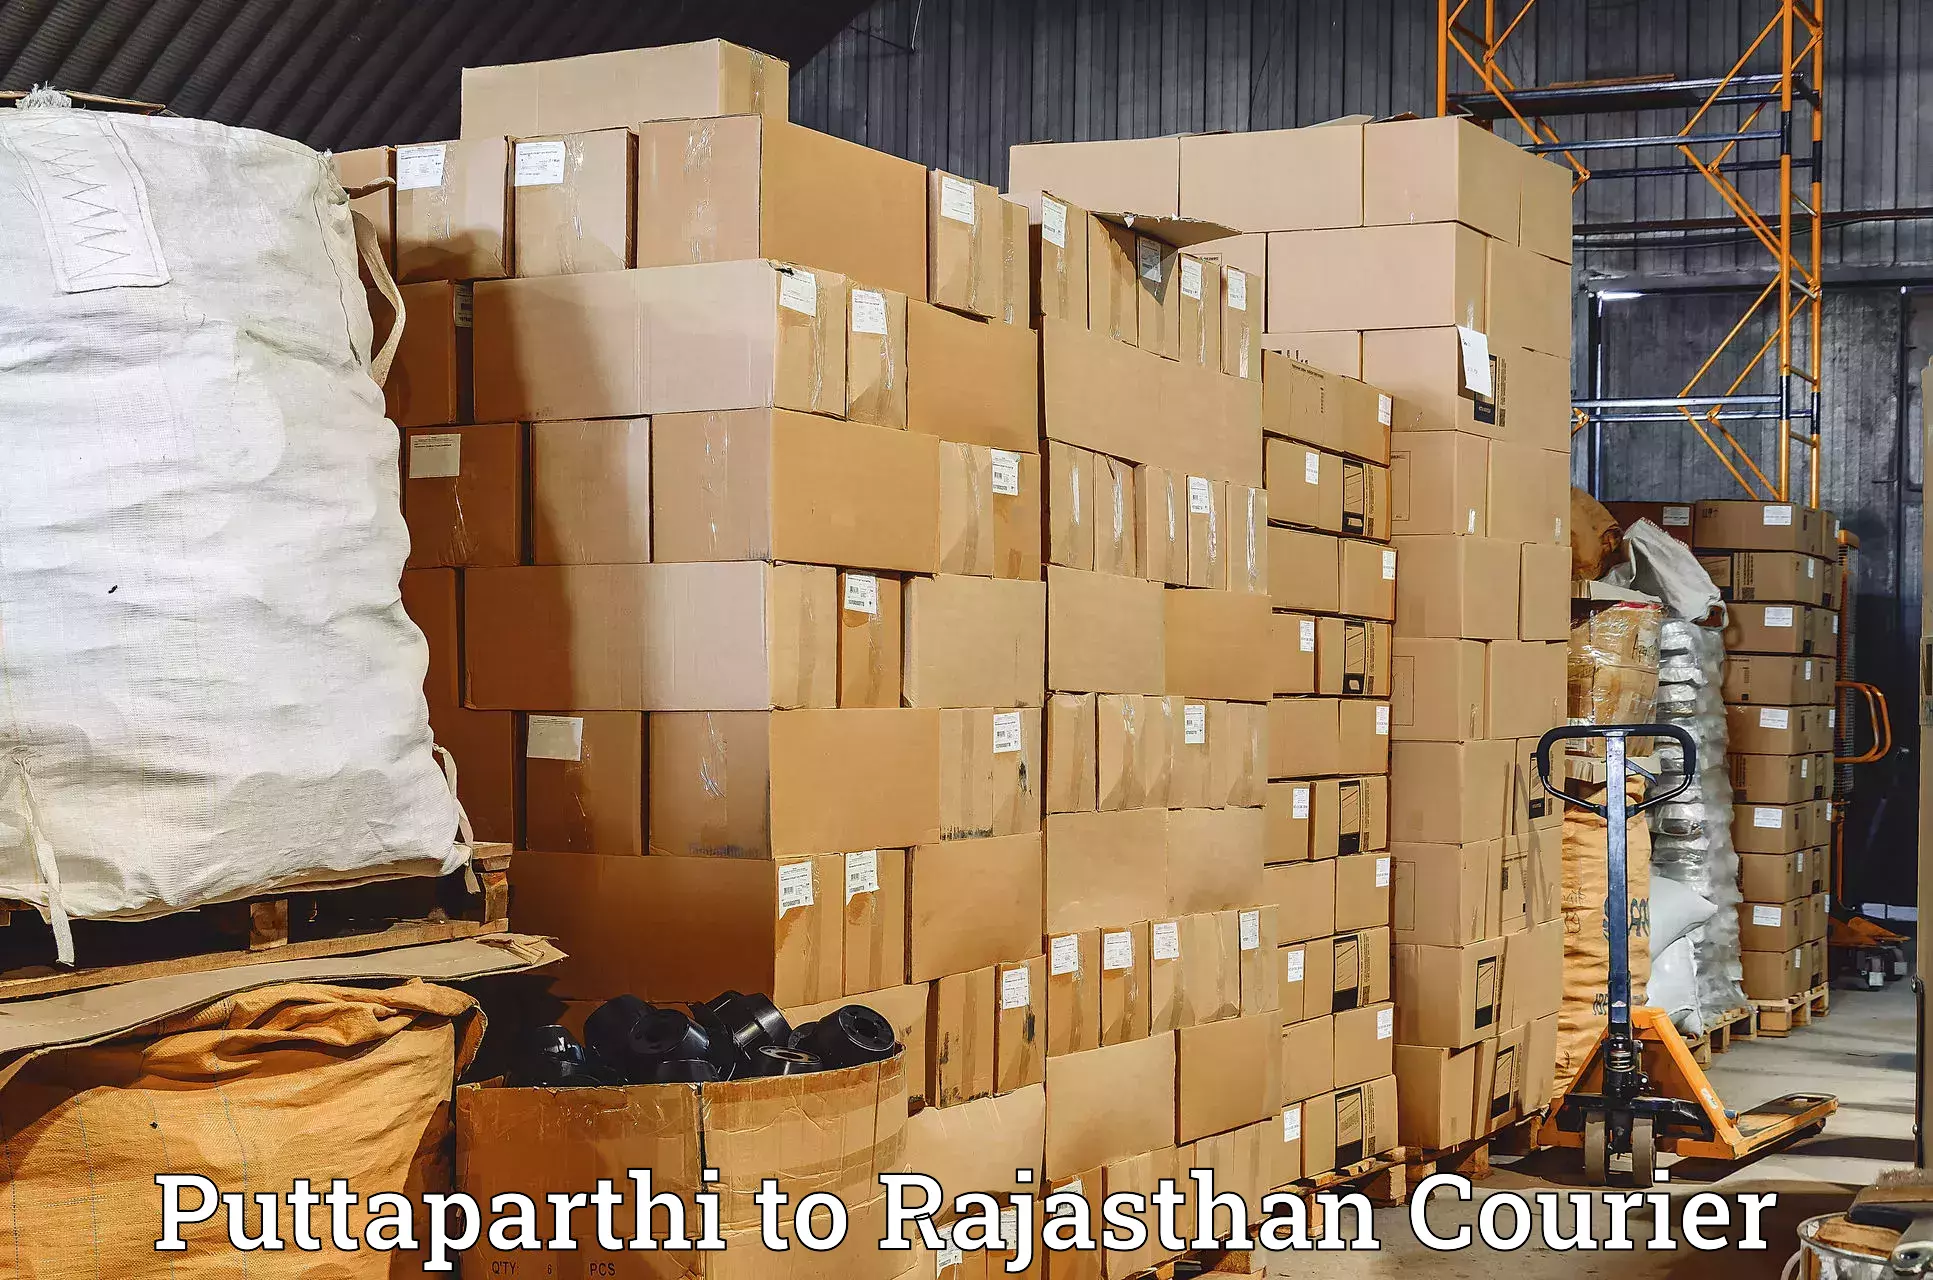 Reliable freight solutions Puttaparthi to Deshnok